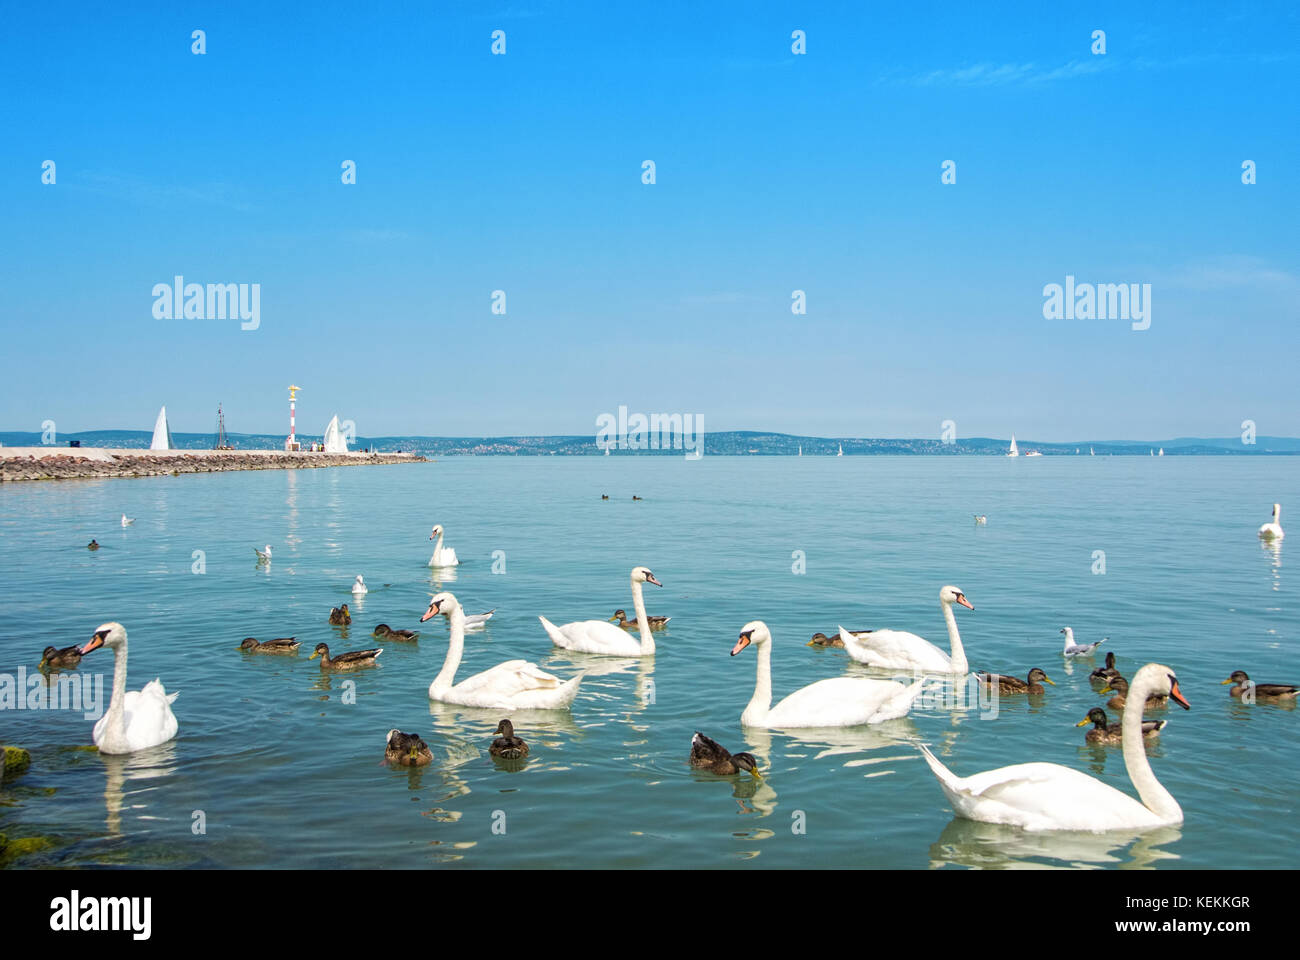 Les oiseaux d'eau, cygnes, canards et mouettes près de l'embarcadère de siofok à la lumière de l'eau lumineuse du Balaton lac avec bateaux et une côte à l'arrière-plan, Hongrie Banque D'Images